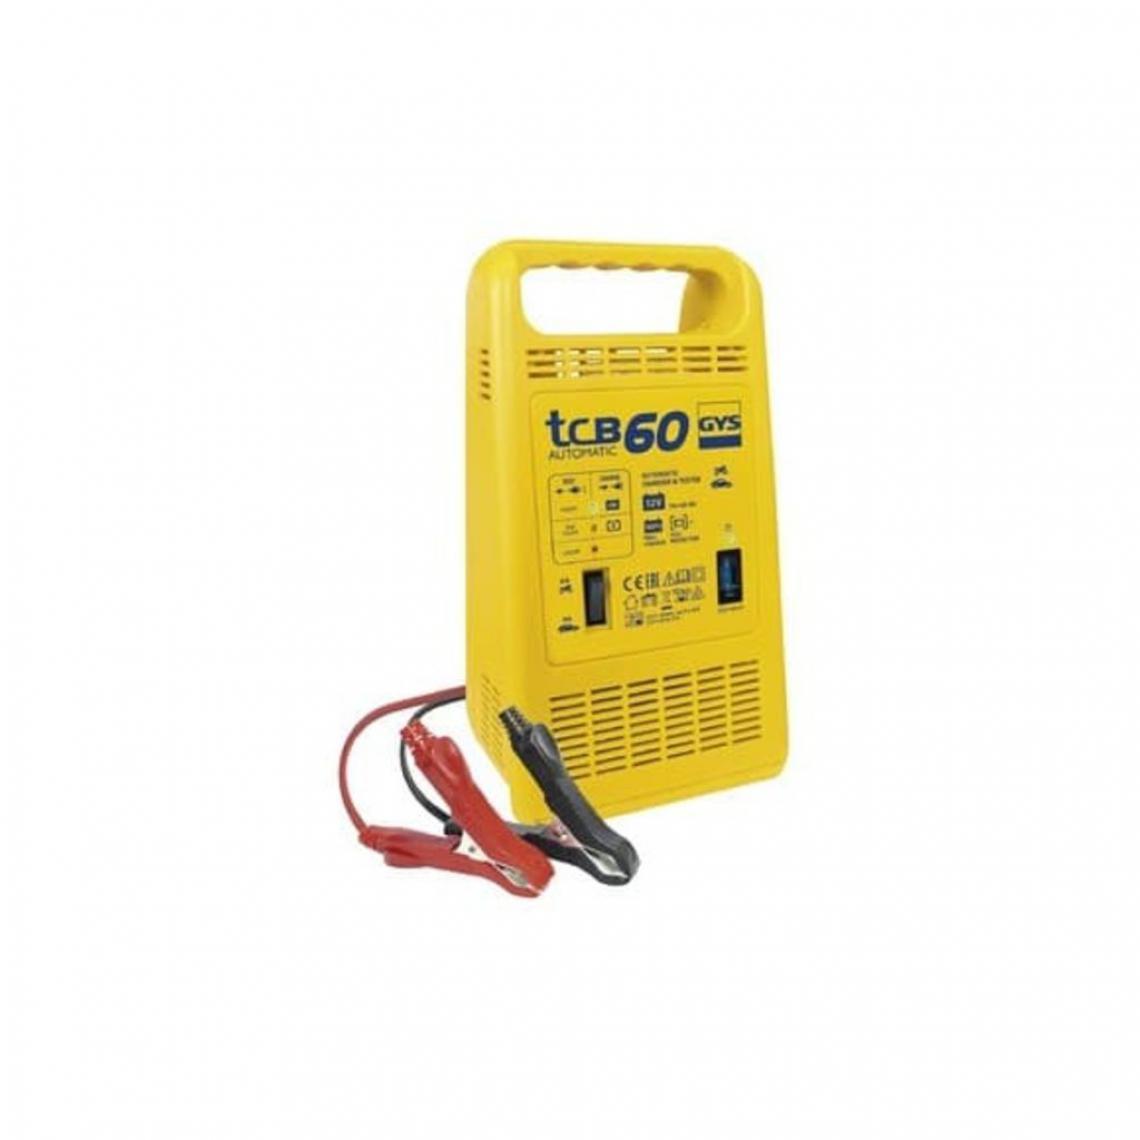 Gys - GYS Chargeur de batteries TCB 60 15-60 Ah 85 W - Consommables pour outillage motorisé